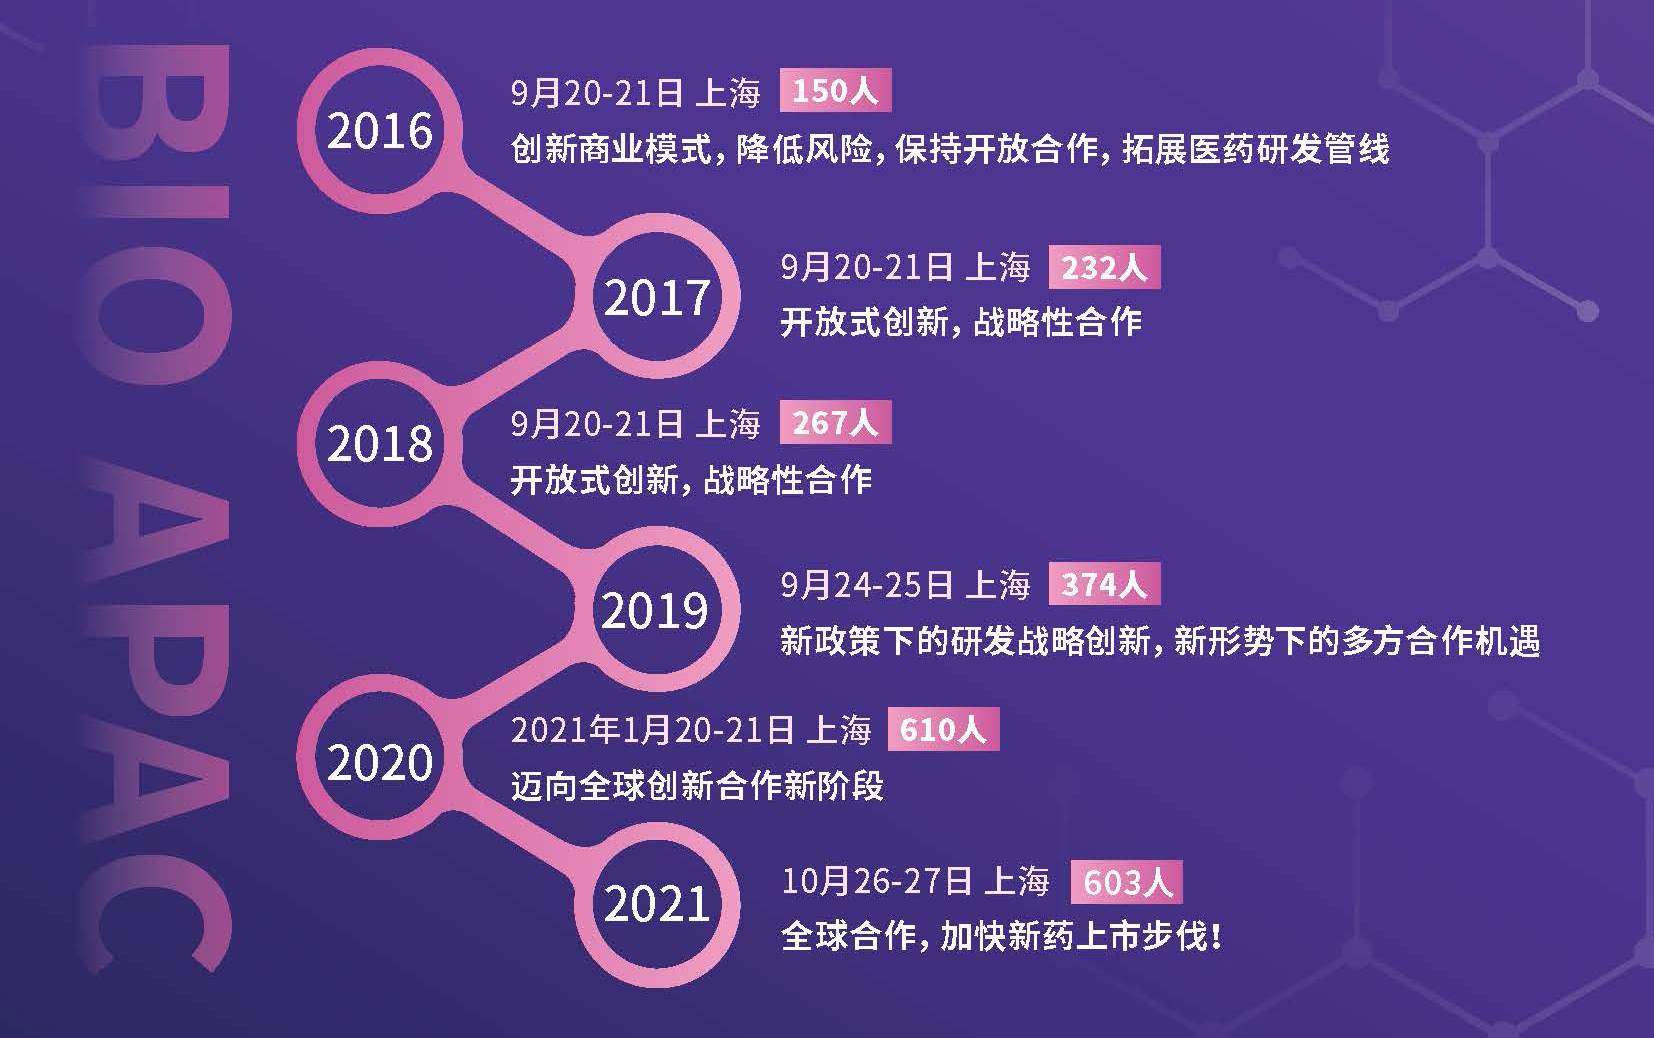 2022（第七届）亚太生物医药合作峰会